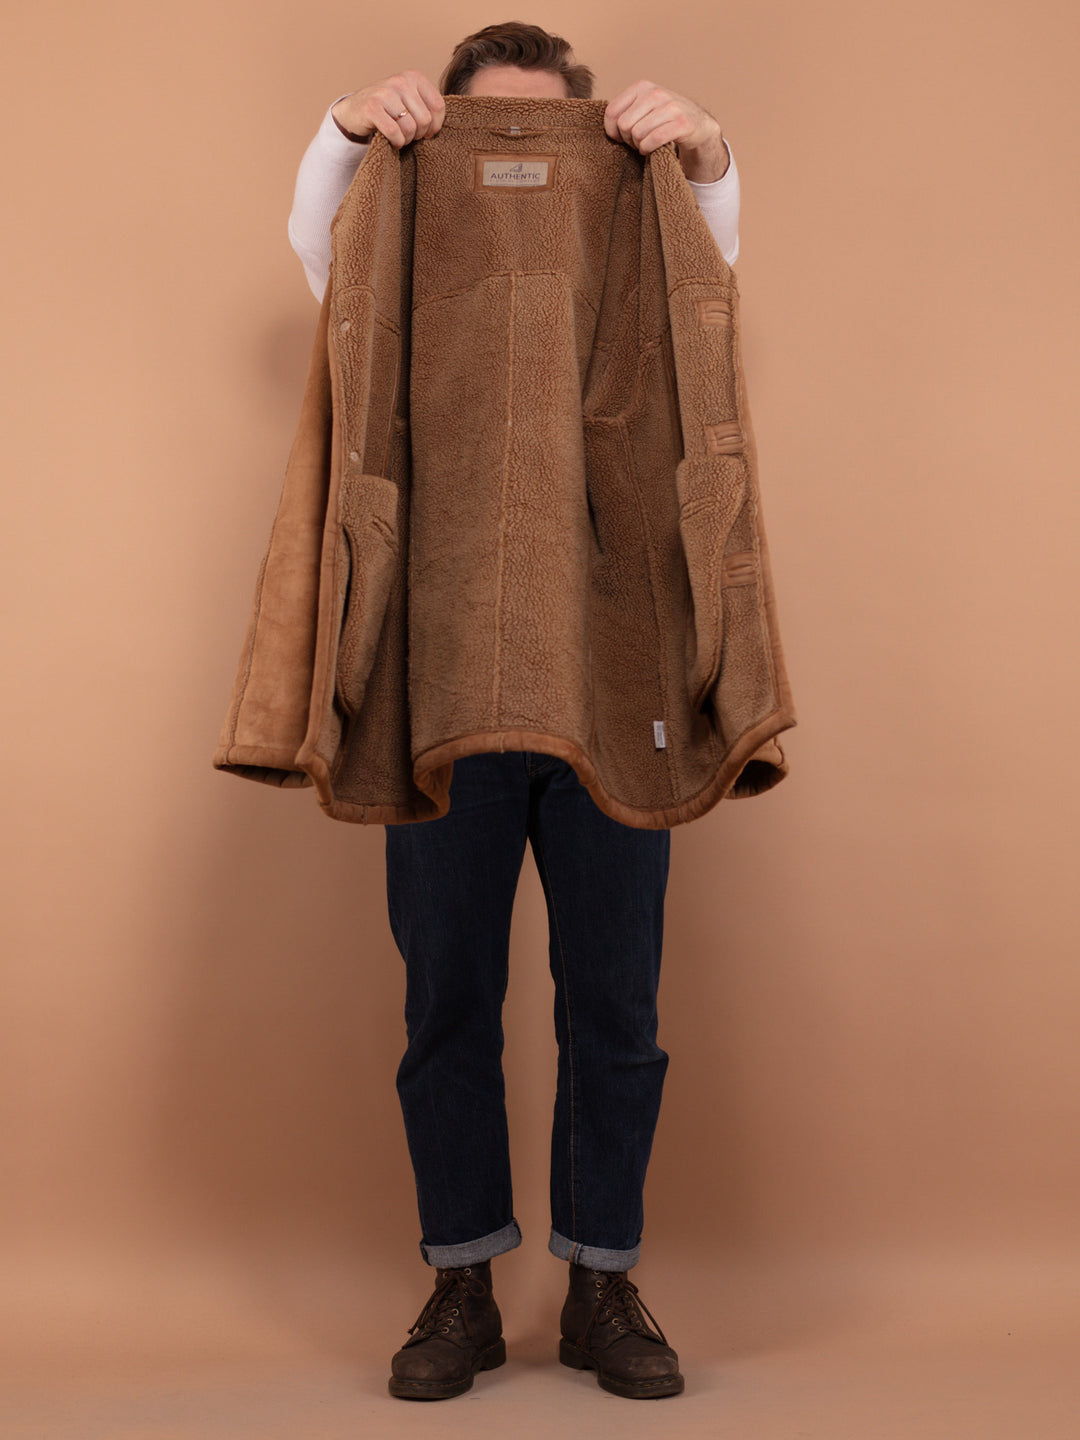 90's Sherpa Lined Coat, Size XL, Oversized Faux Sheepskin Jacket, Vintage Men Western Coat, Lightweight Faux Suede Button Up Jacket